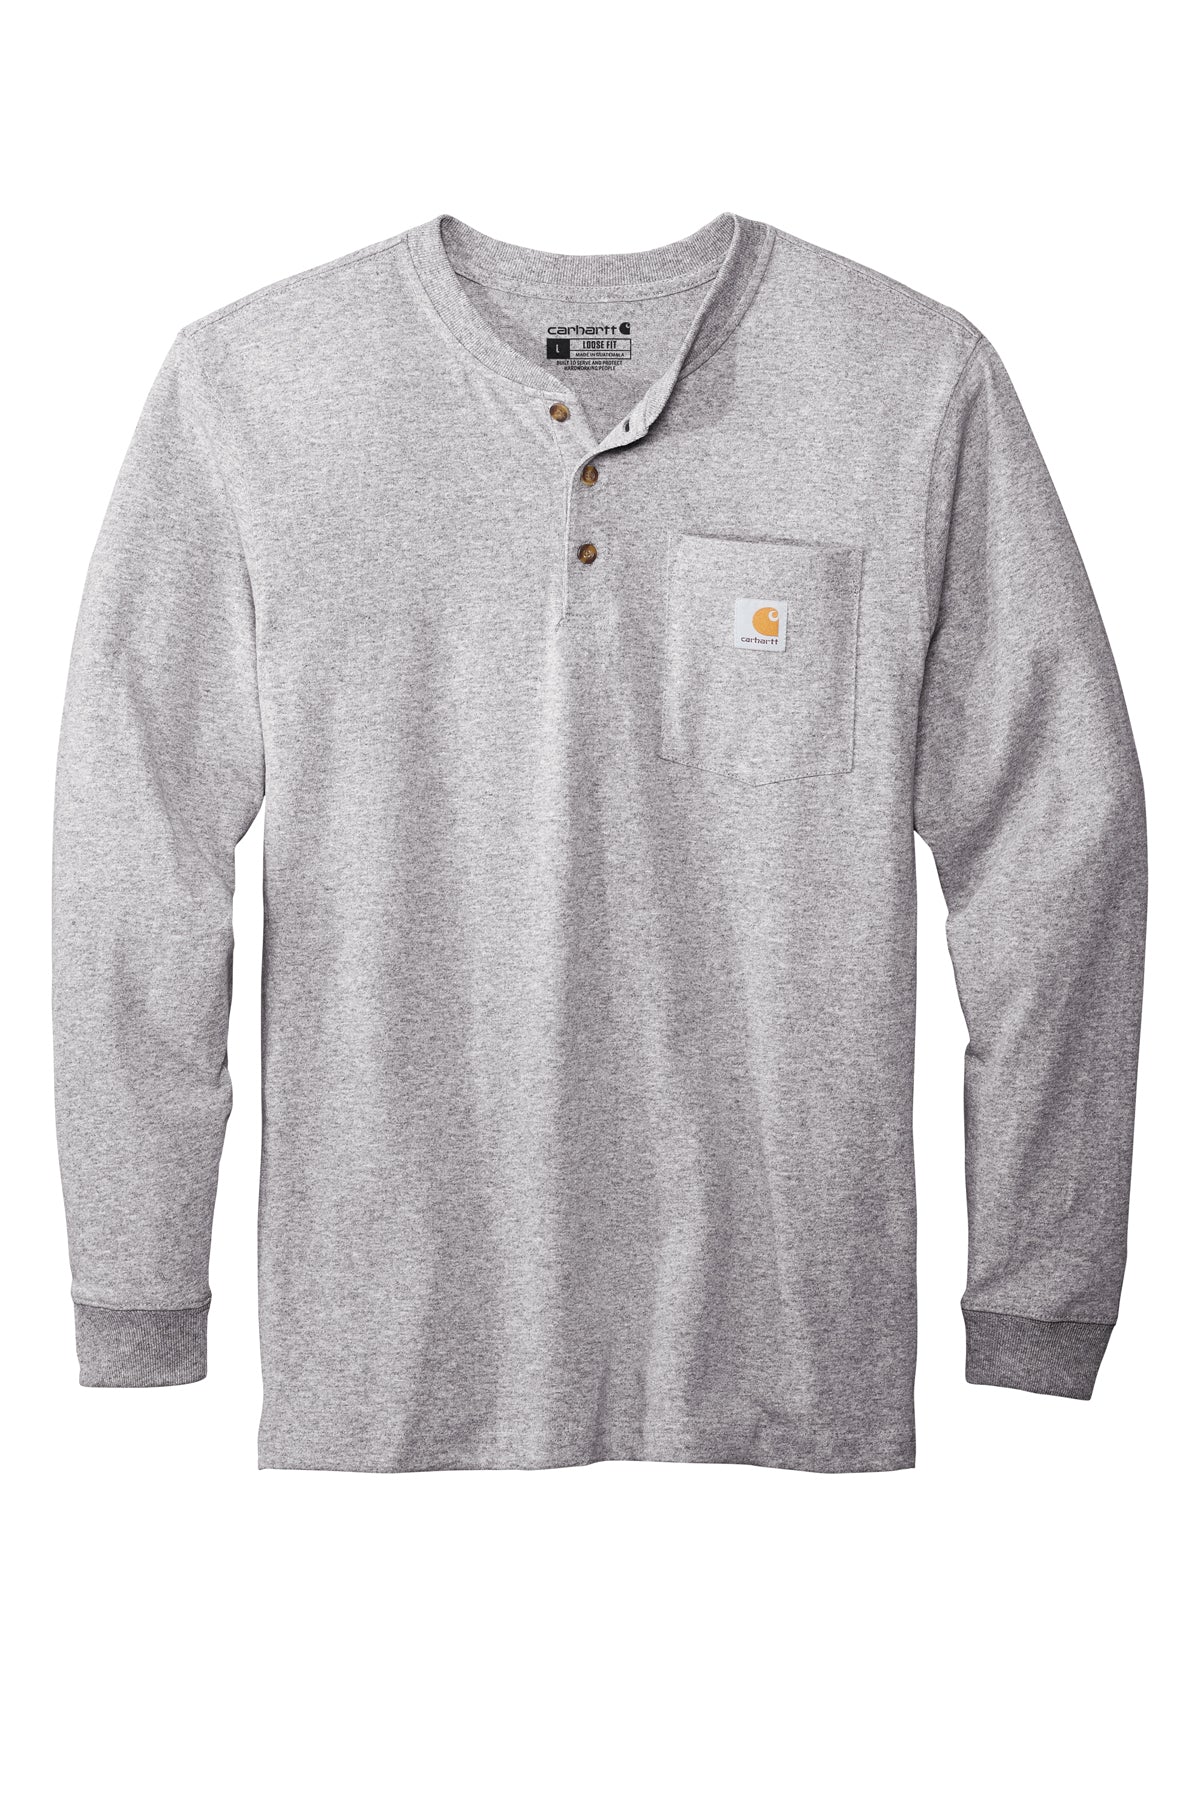 Carhartt® - Long Sleeve Henley T-Shirt - CTK128